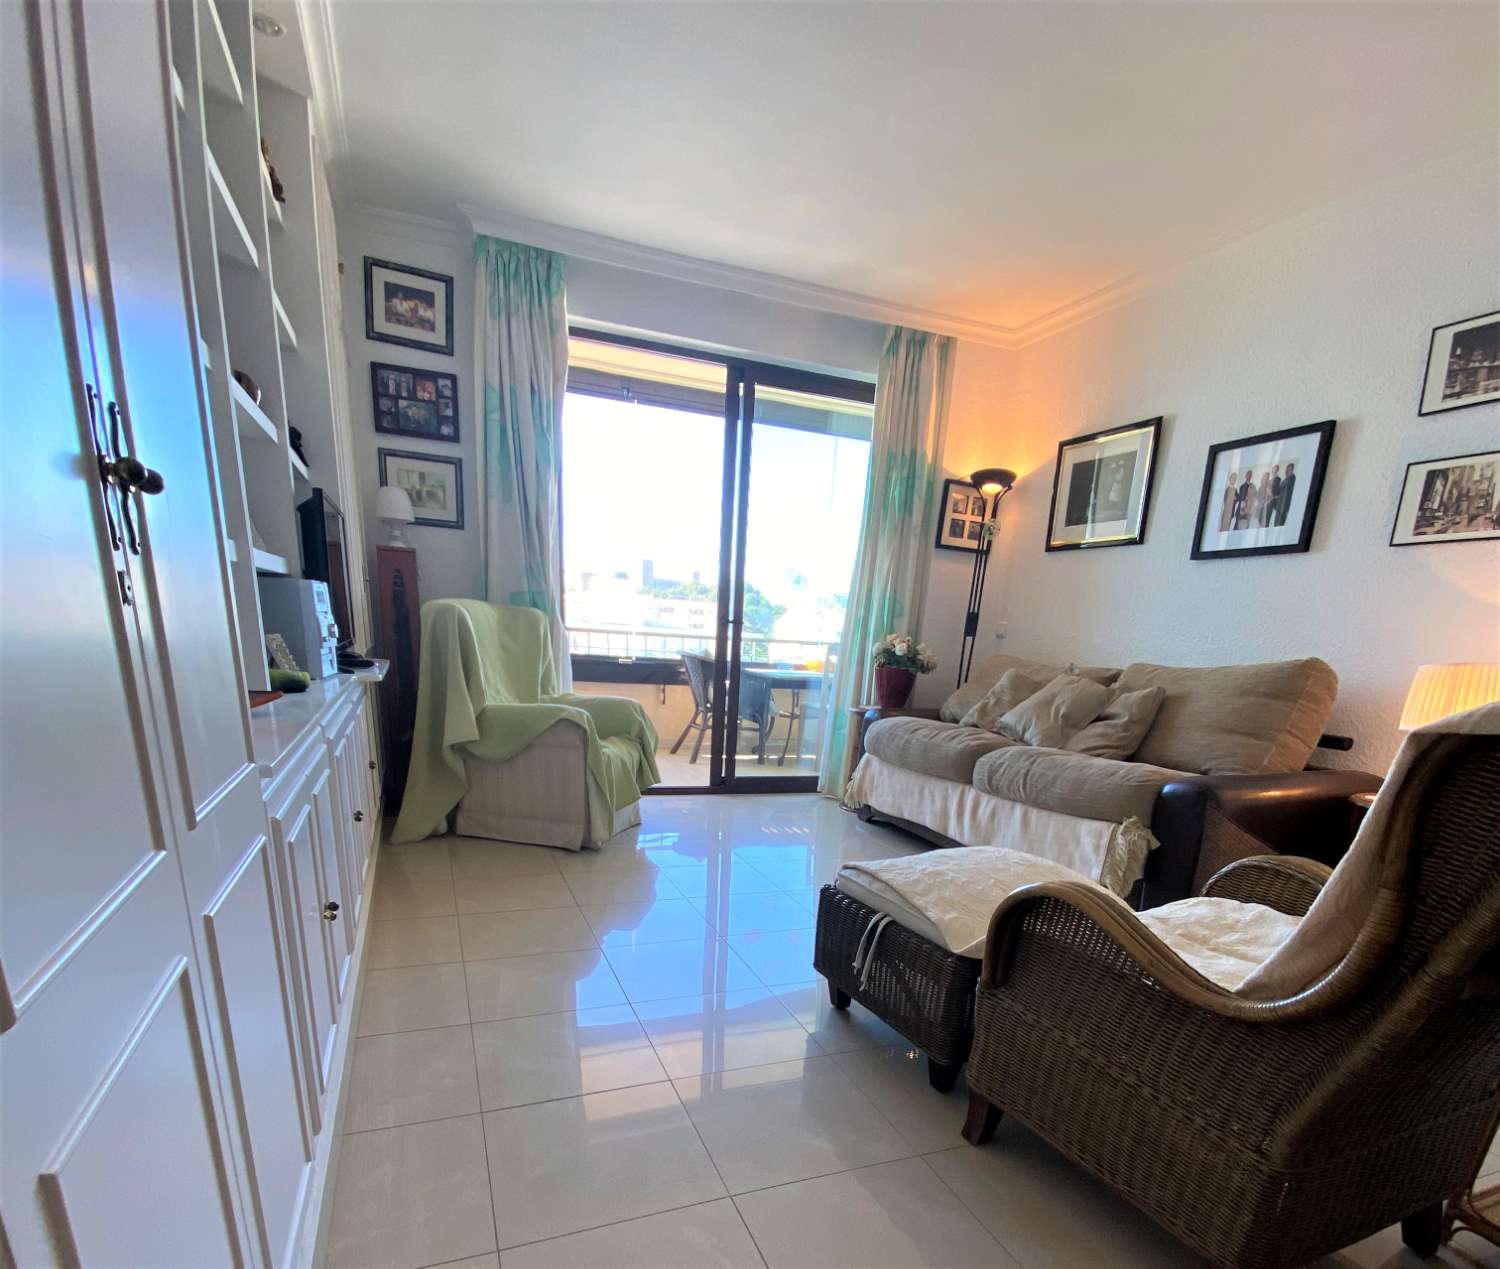 Fuengirola, 1 camera da letto, vista panoramica, Wi-Fi gratuito, piscina, spiaggia di prima linea.